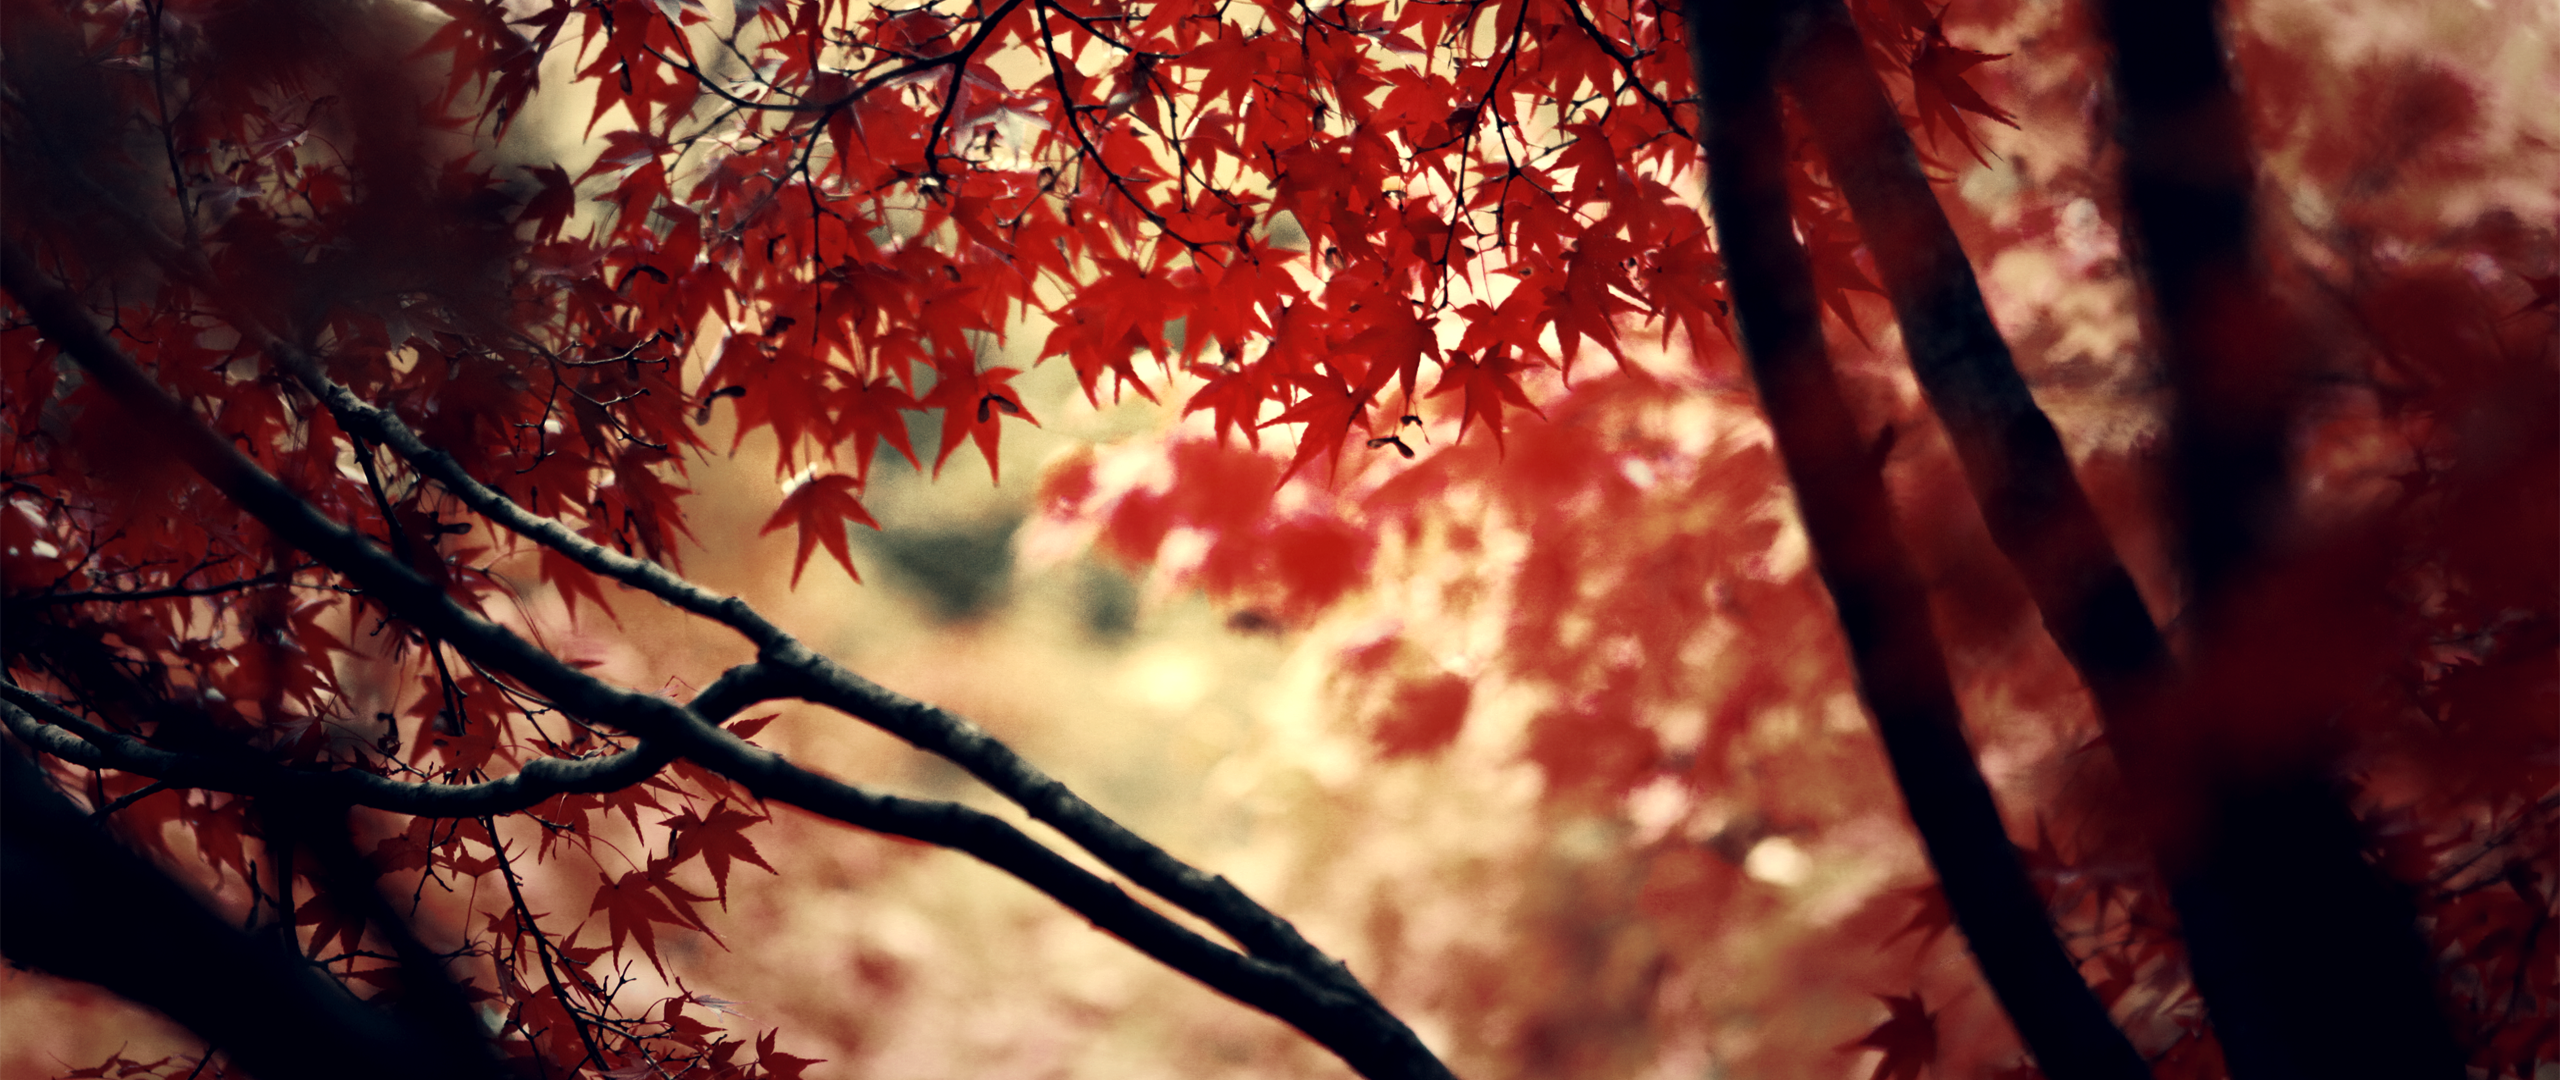 Обложки для вк профиля 1920х640. Природа. Осень картинки. Обложка профиля осень. Осенняя шапка для твиттера.